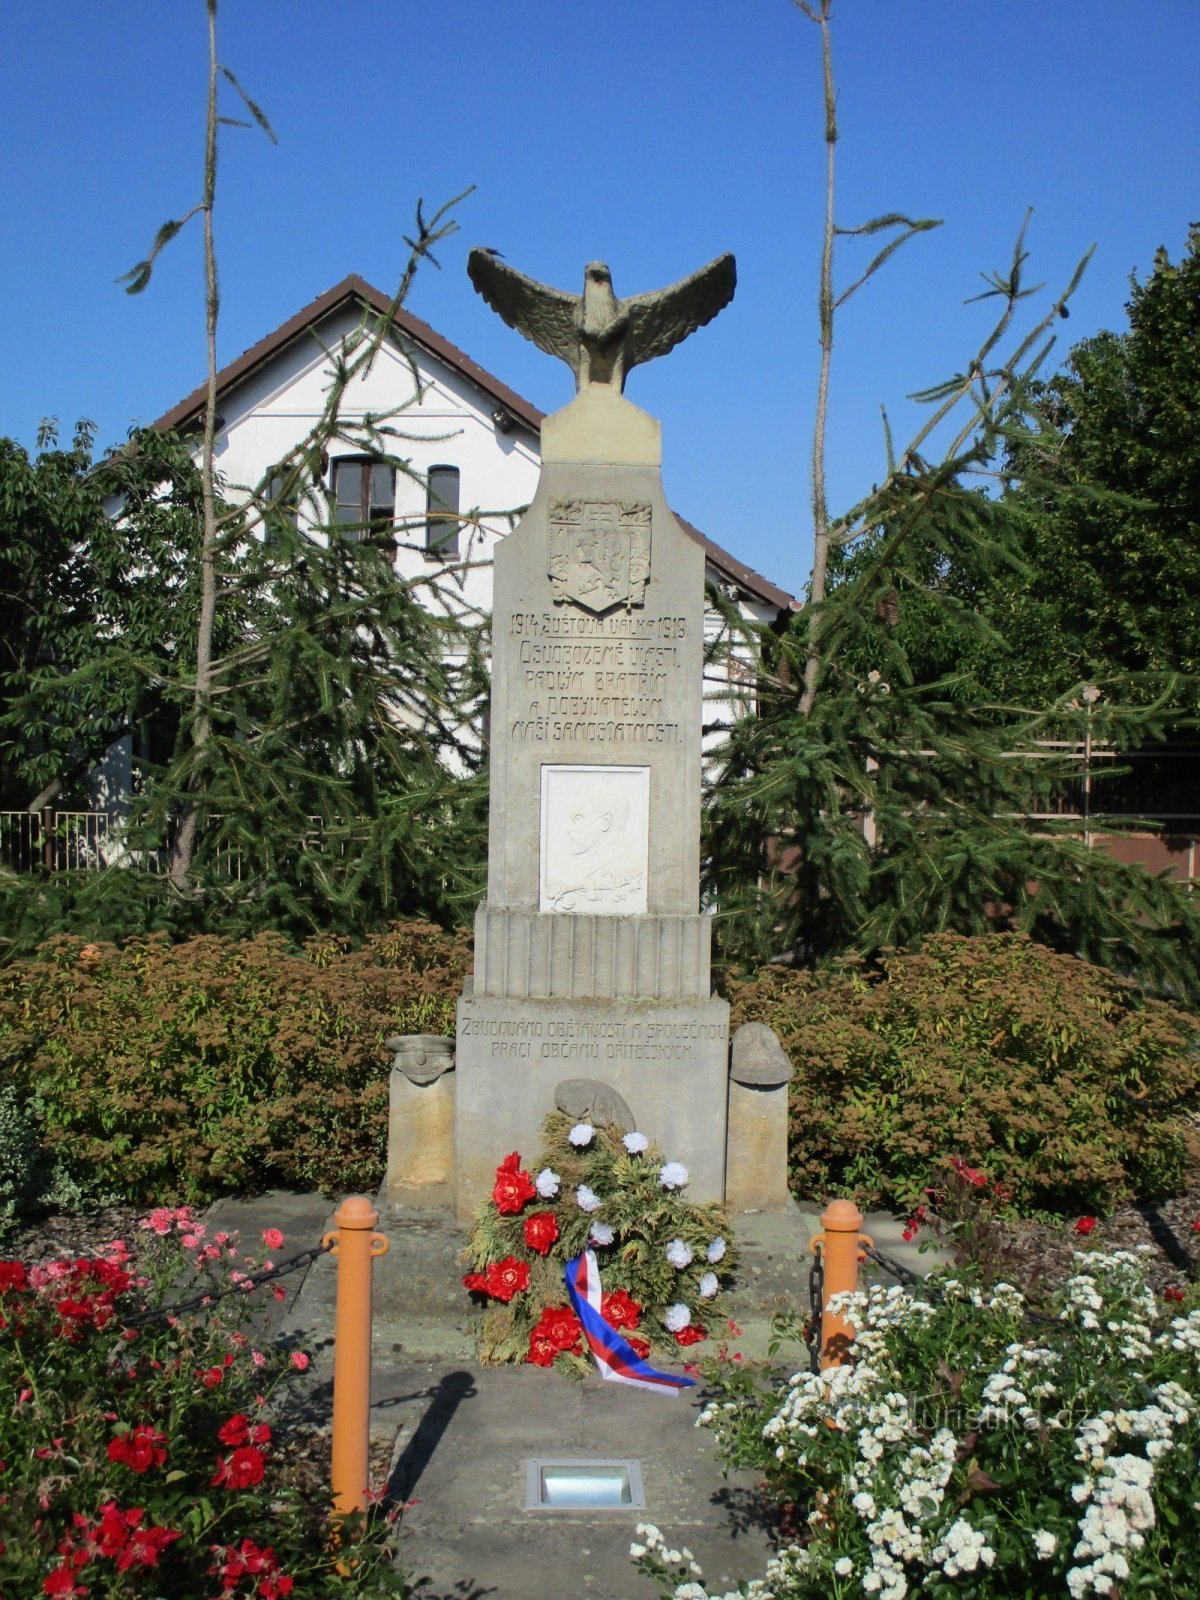 Ensimmäisessä maailmansodassa kaatuneiden muistomerkki (Dríteč)